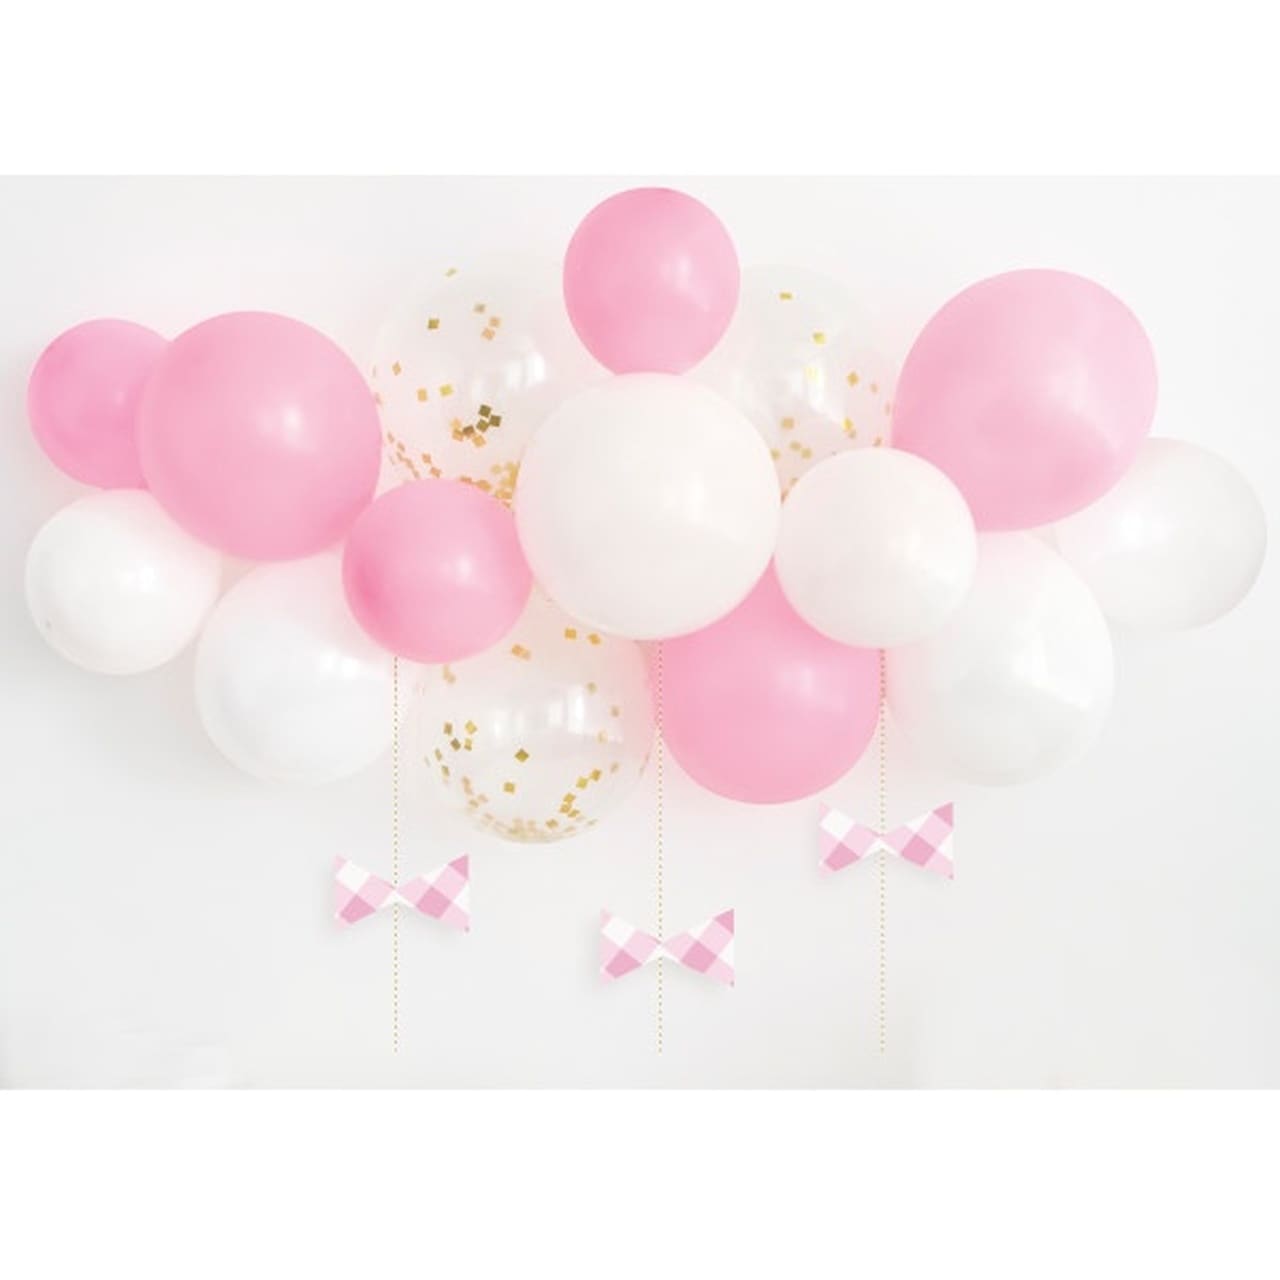 DIY Ballongbåge i rosa med rosetter